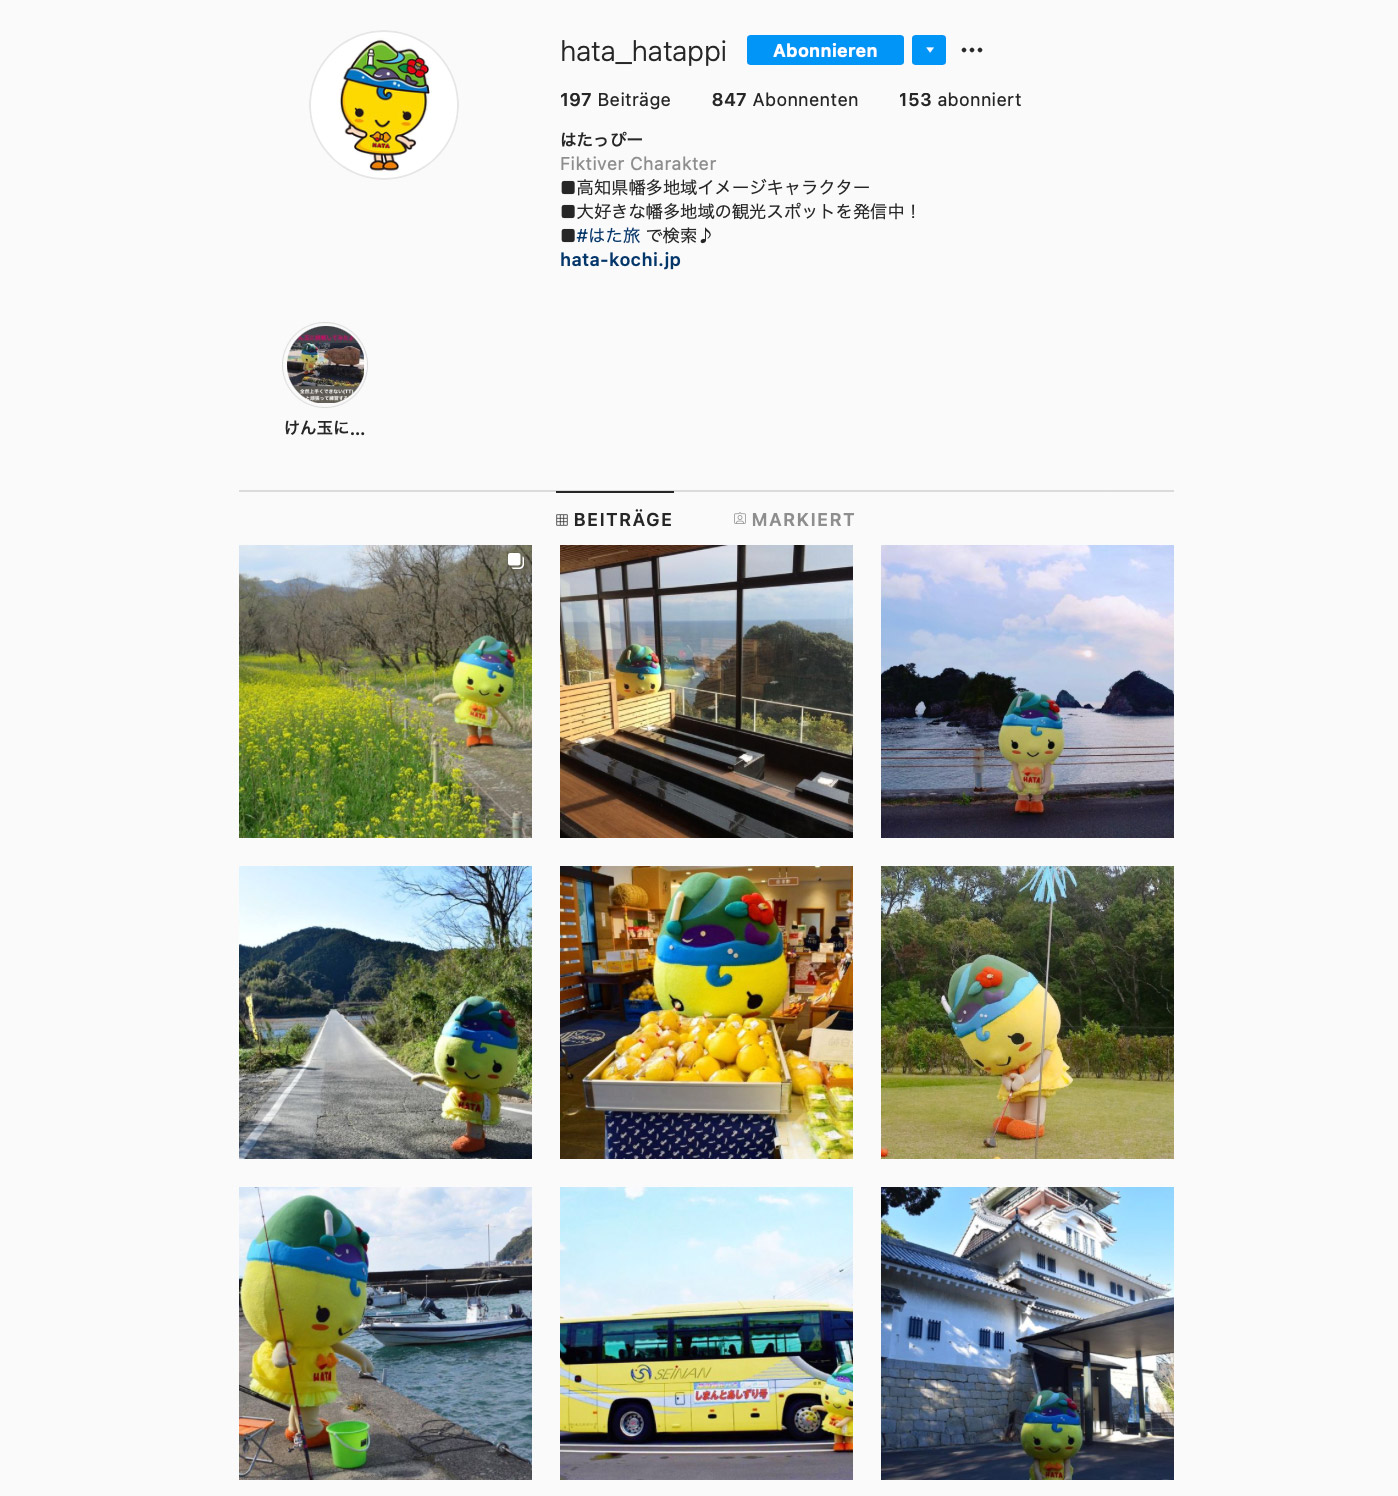 Hatappy hat seit 2019 auch einen eigenen Instagram-Account.